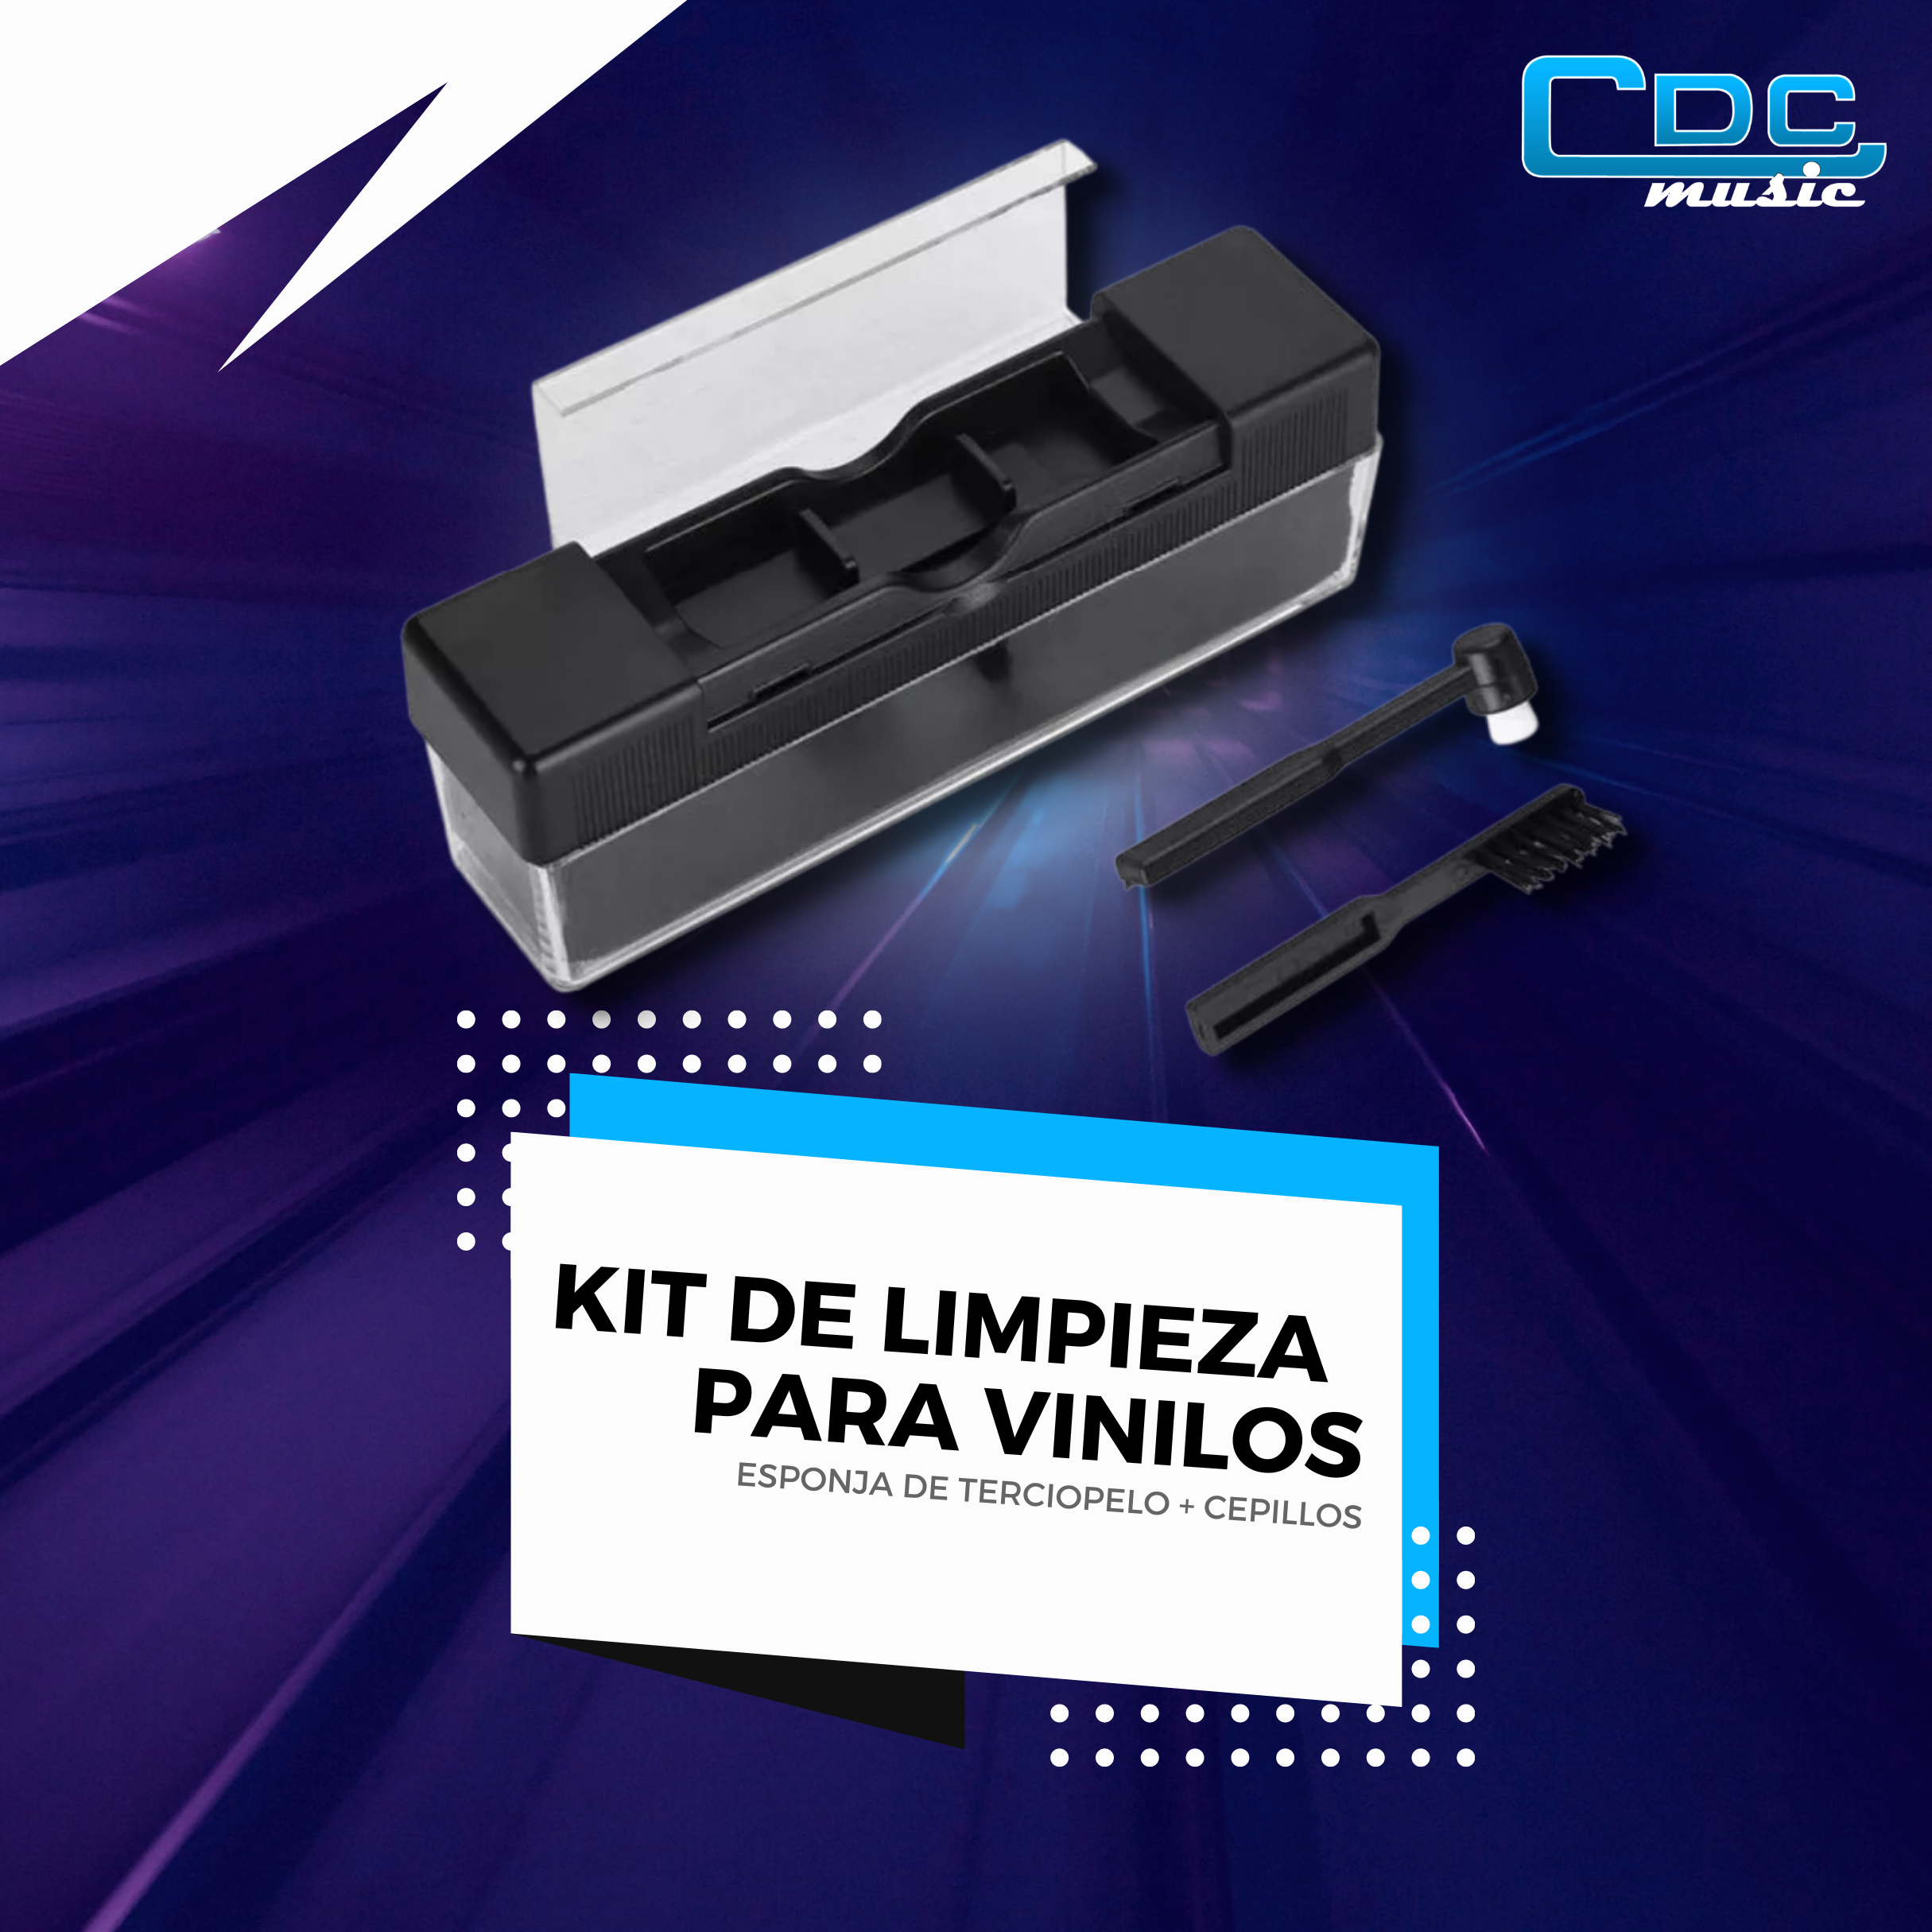 Kit de Limpieza Solo Vinilos - 1 Líquido 300cc. + 2 paños